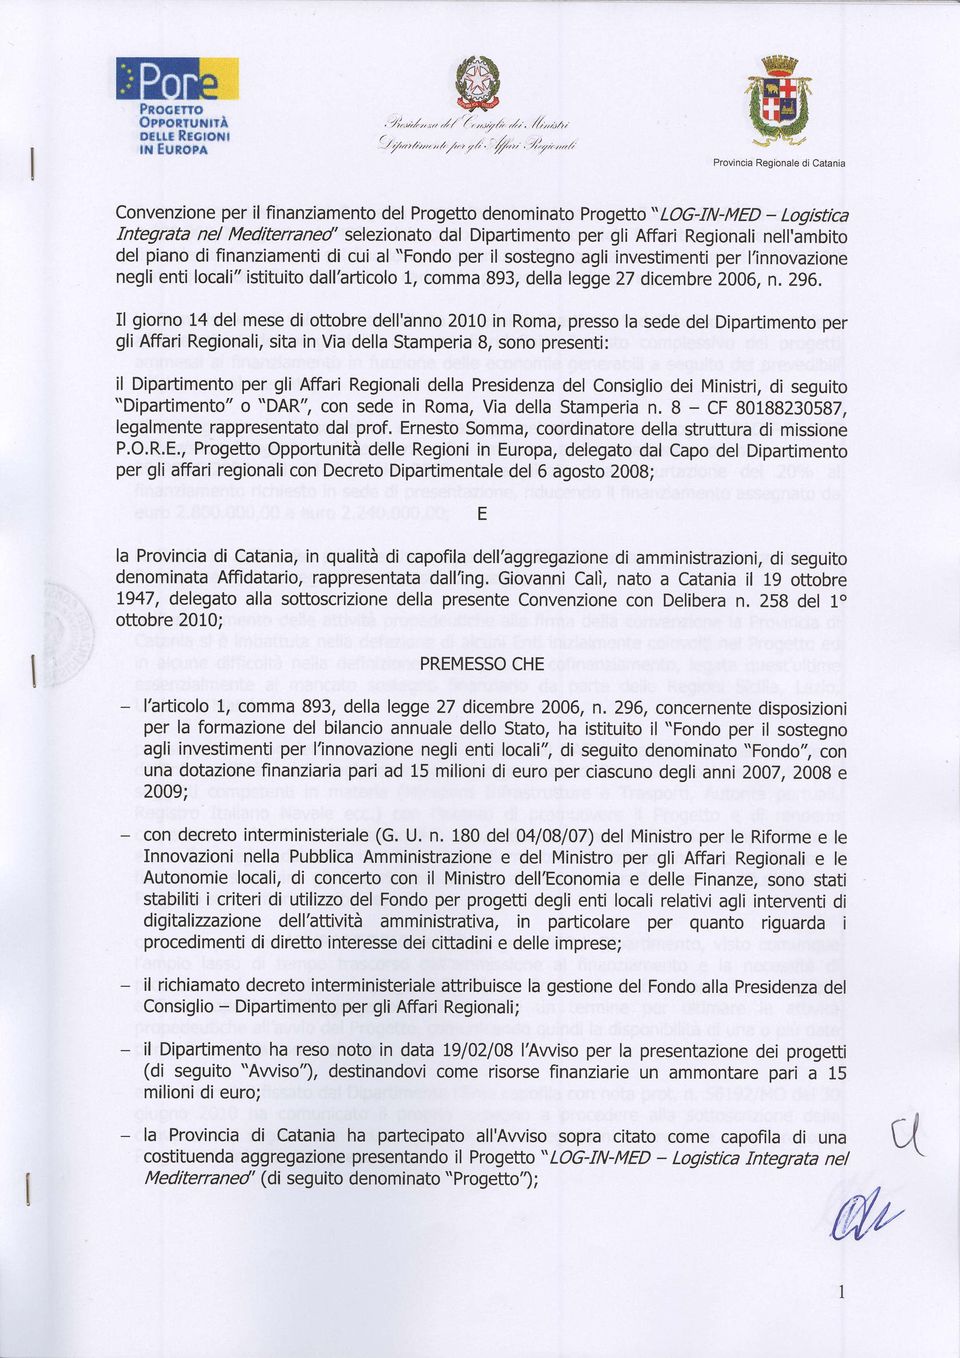 finanziamenti di cui al "Fondo per il sostegno agli investimenti per l'innovazione negfi enti locali" istituito dallhfticolo 1, comma 893, della legge2t dicembre 2006, n. 296.